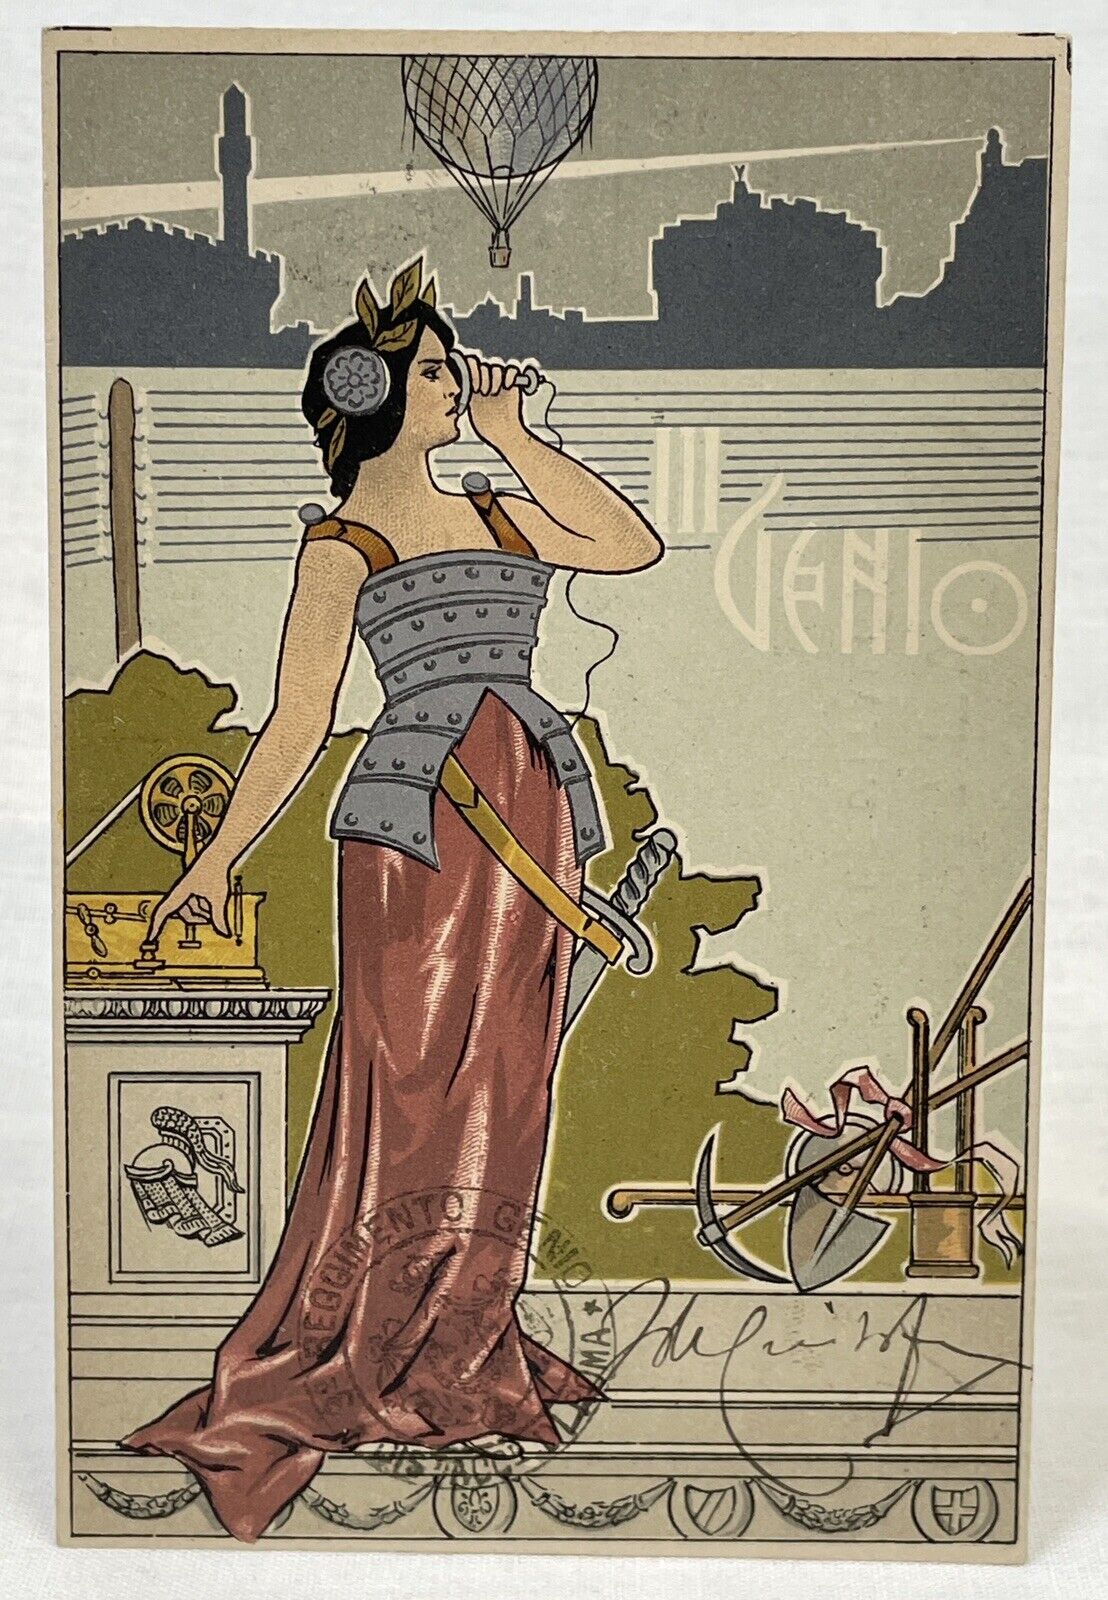 Italian Artist | Rare | Art Nouveau | Italy III GENIO Balloon | Woman Warrior